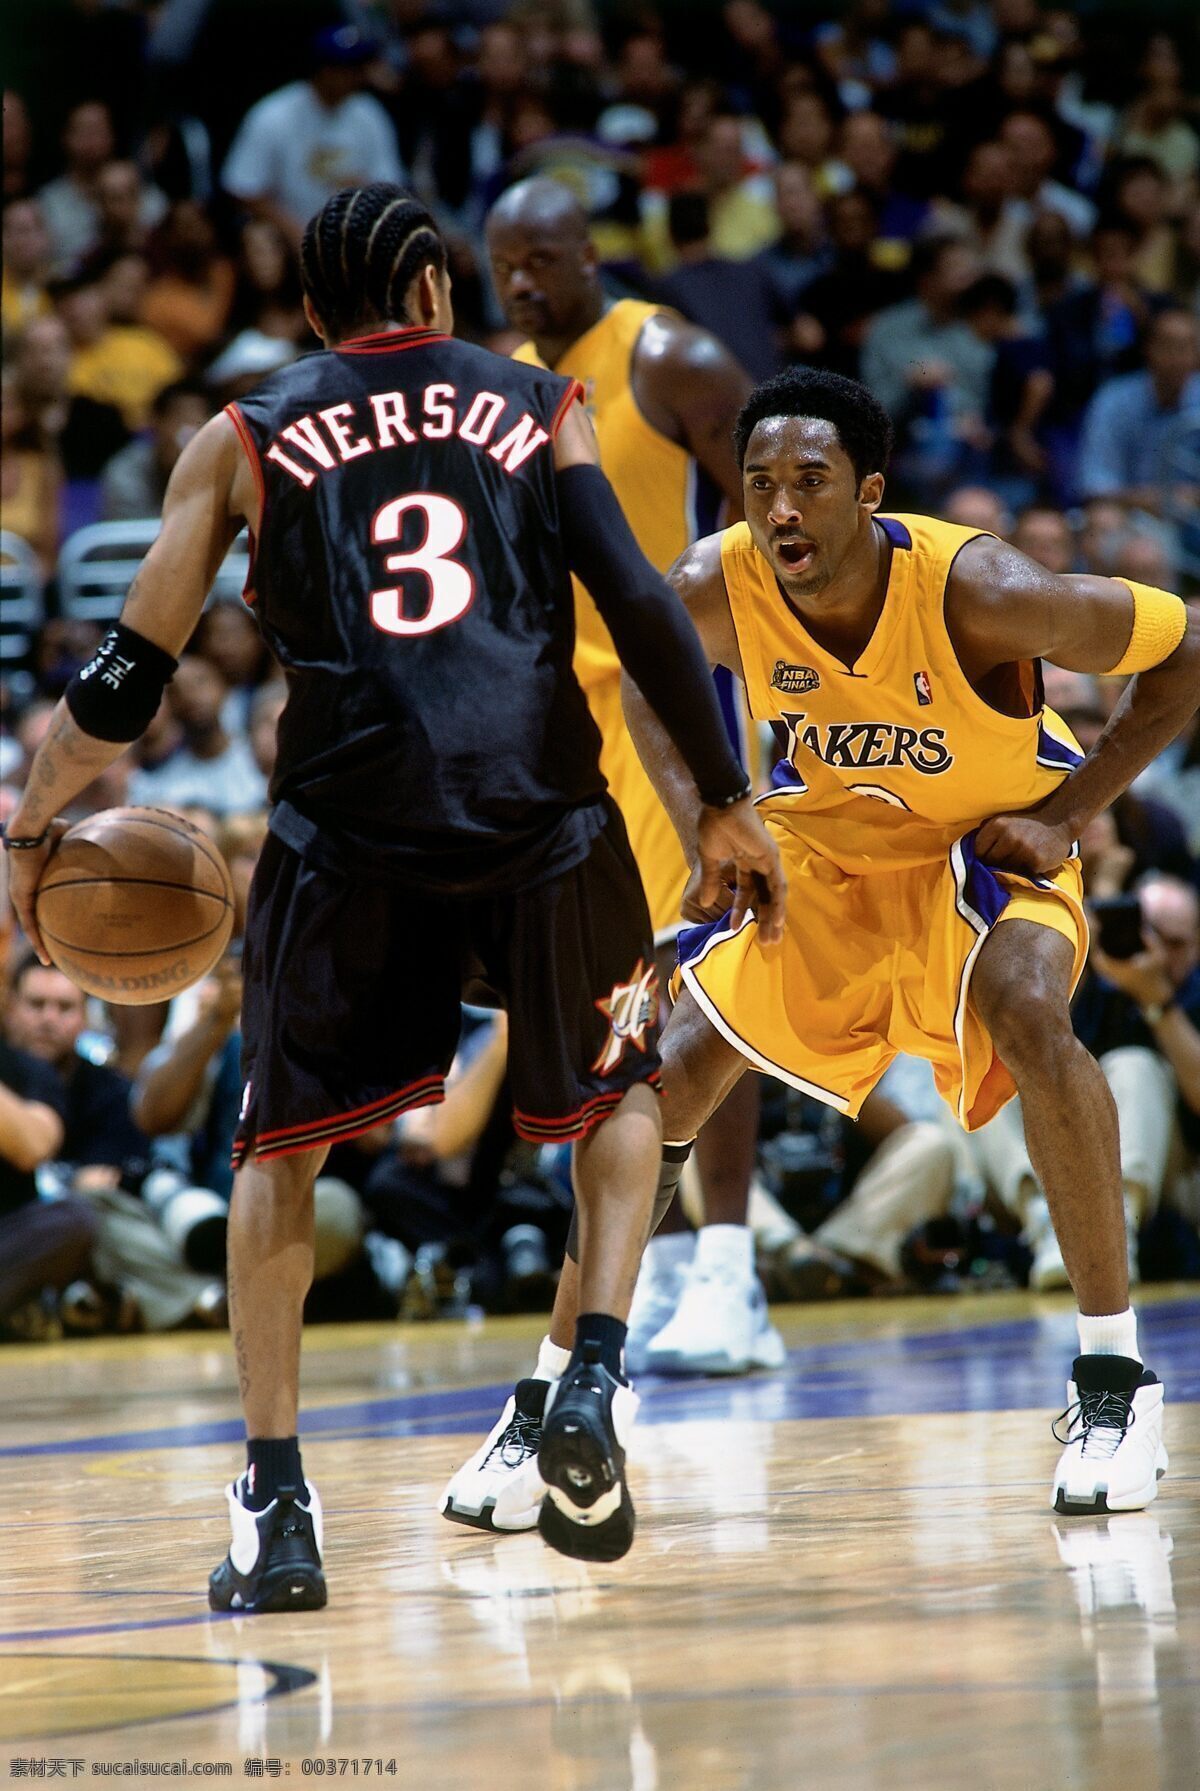 艾弗森 nba 篮球 过人 科比 2001 总决赛 费城76人 湖人 明星偶像 人物图库